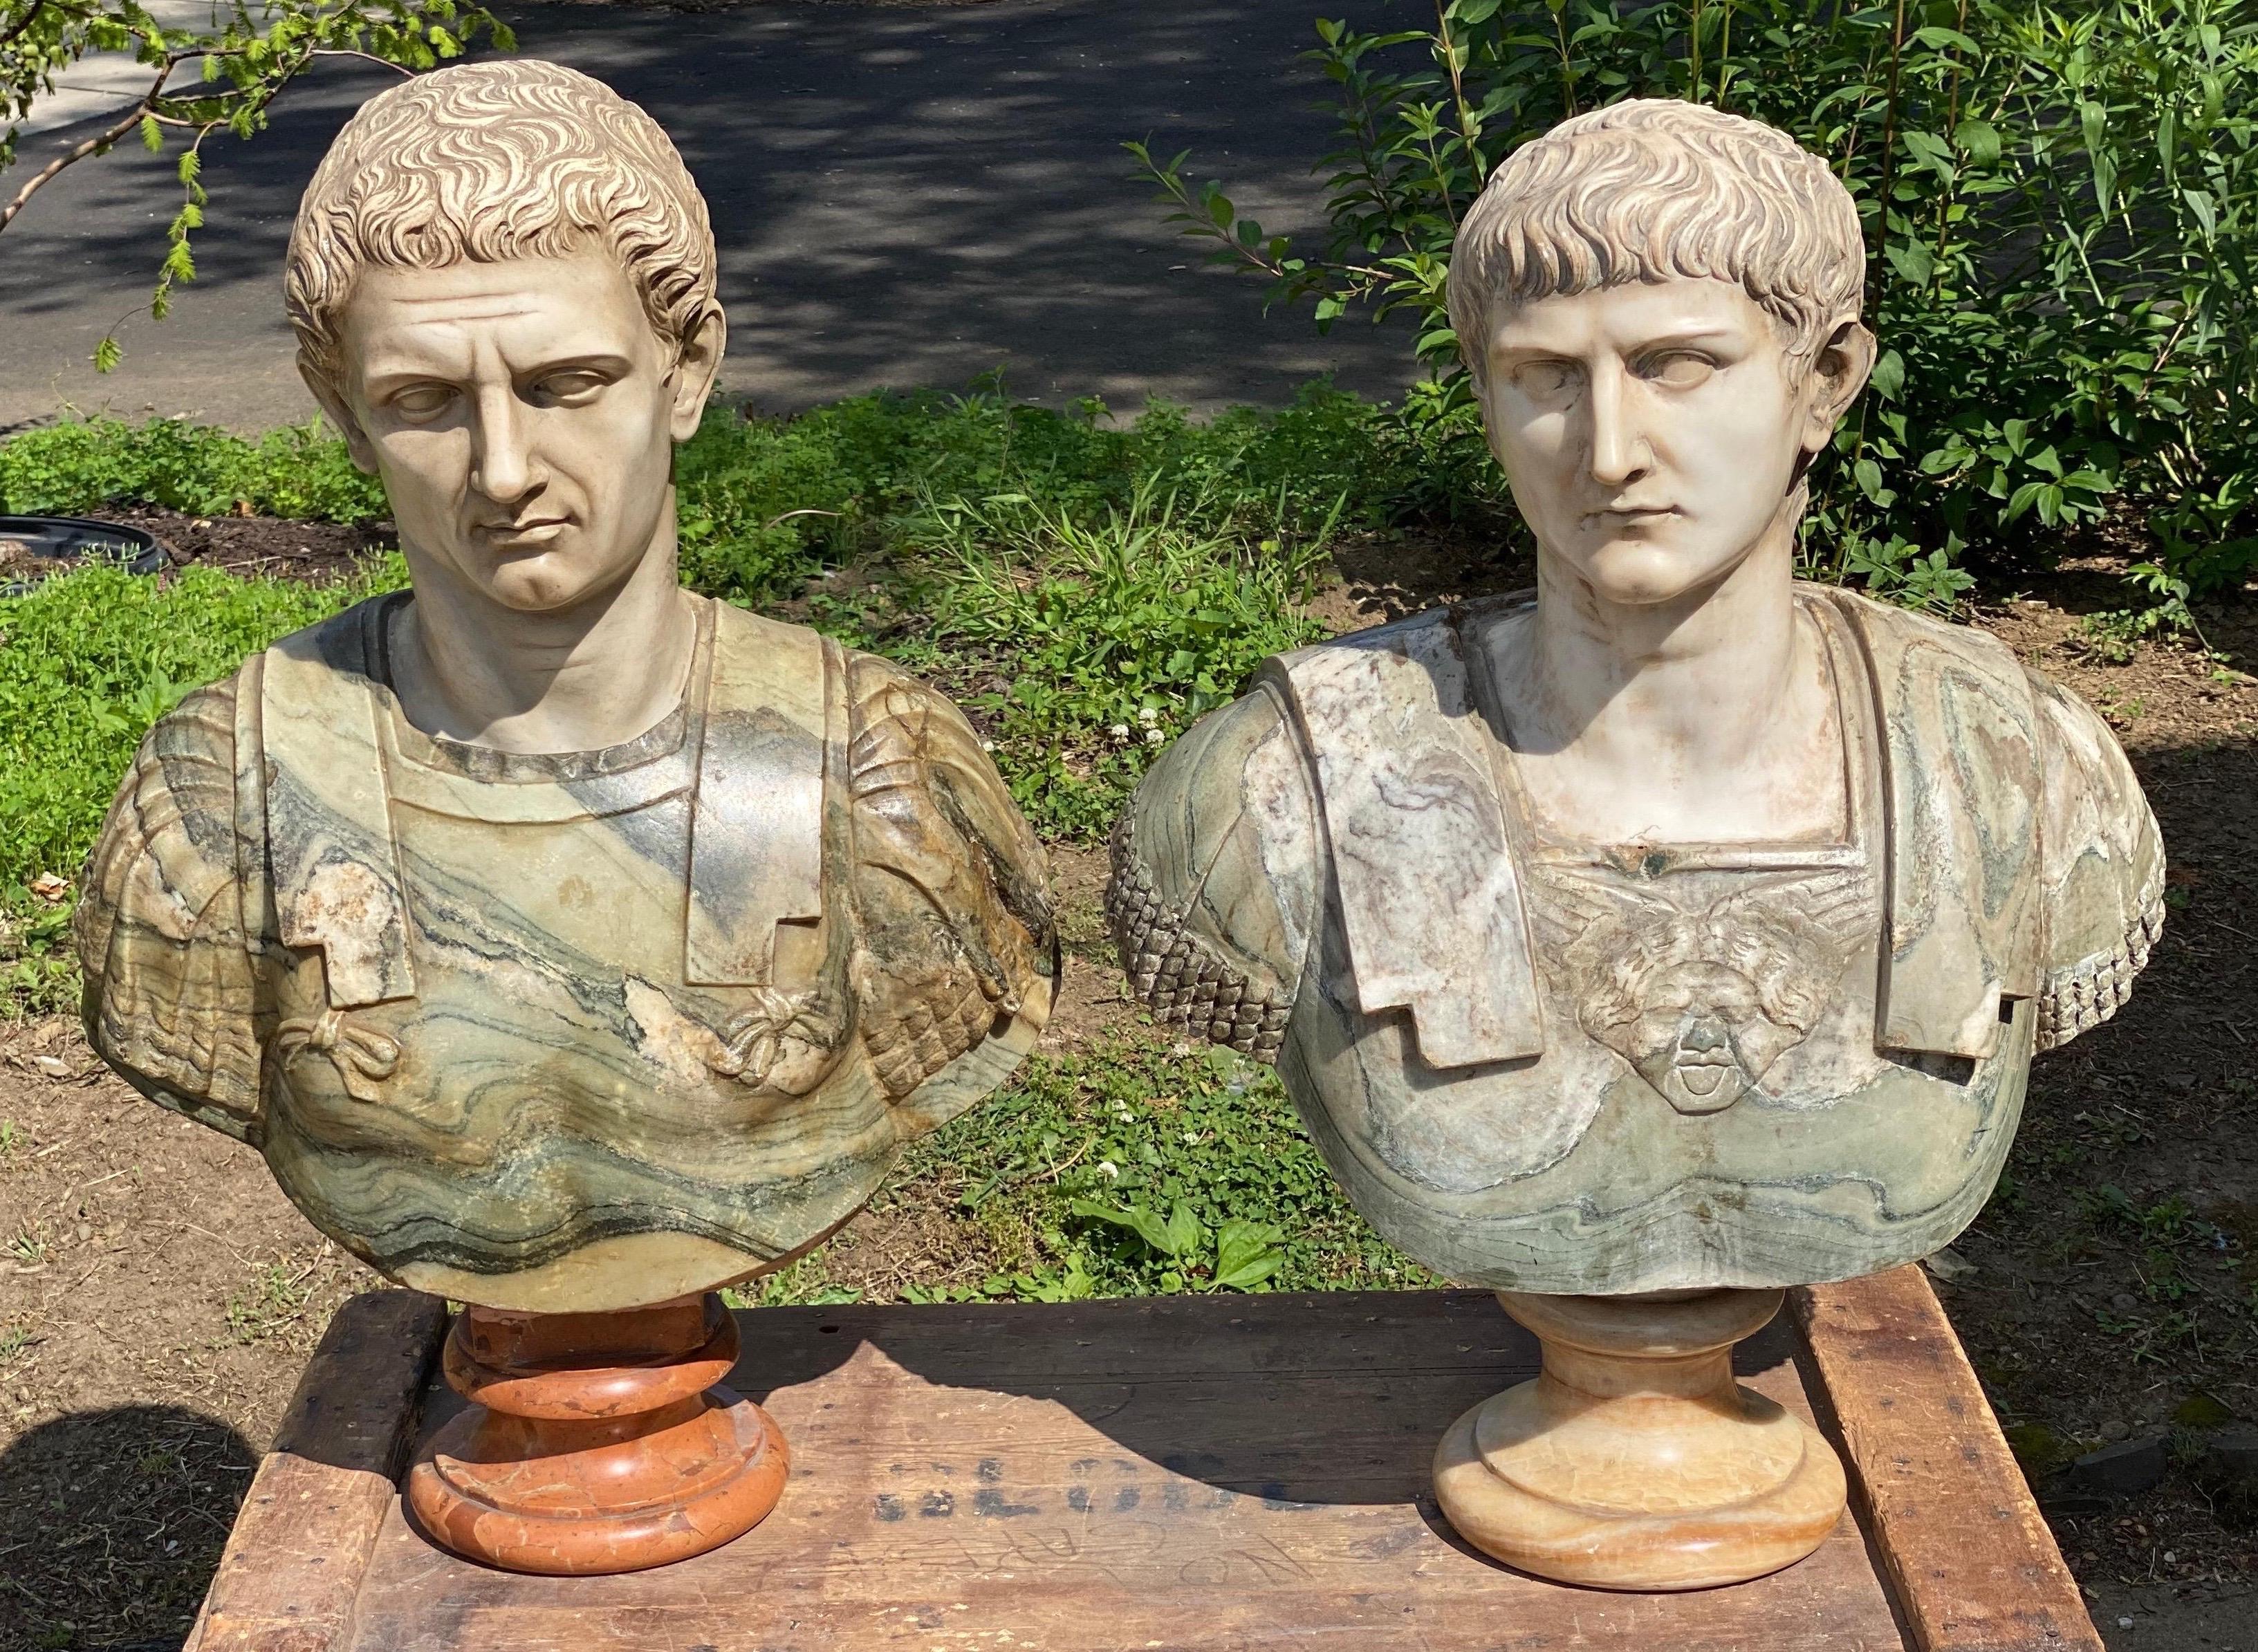 Incroyables bustes en marbre italiens du XIXe siècle, sculptés à la main, représentant Jules César et Marc Antoine.

Les visages vivants sont impeccablement sculptés dans du marbre blanc. Ces bustes vraiment étonnants ont clairement été sculptés par